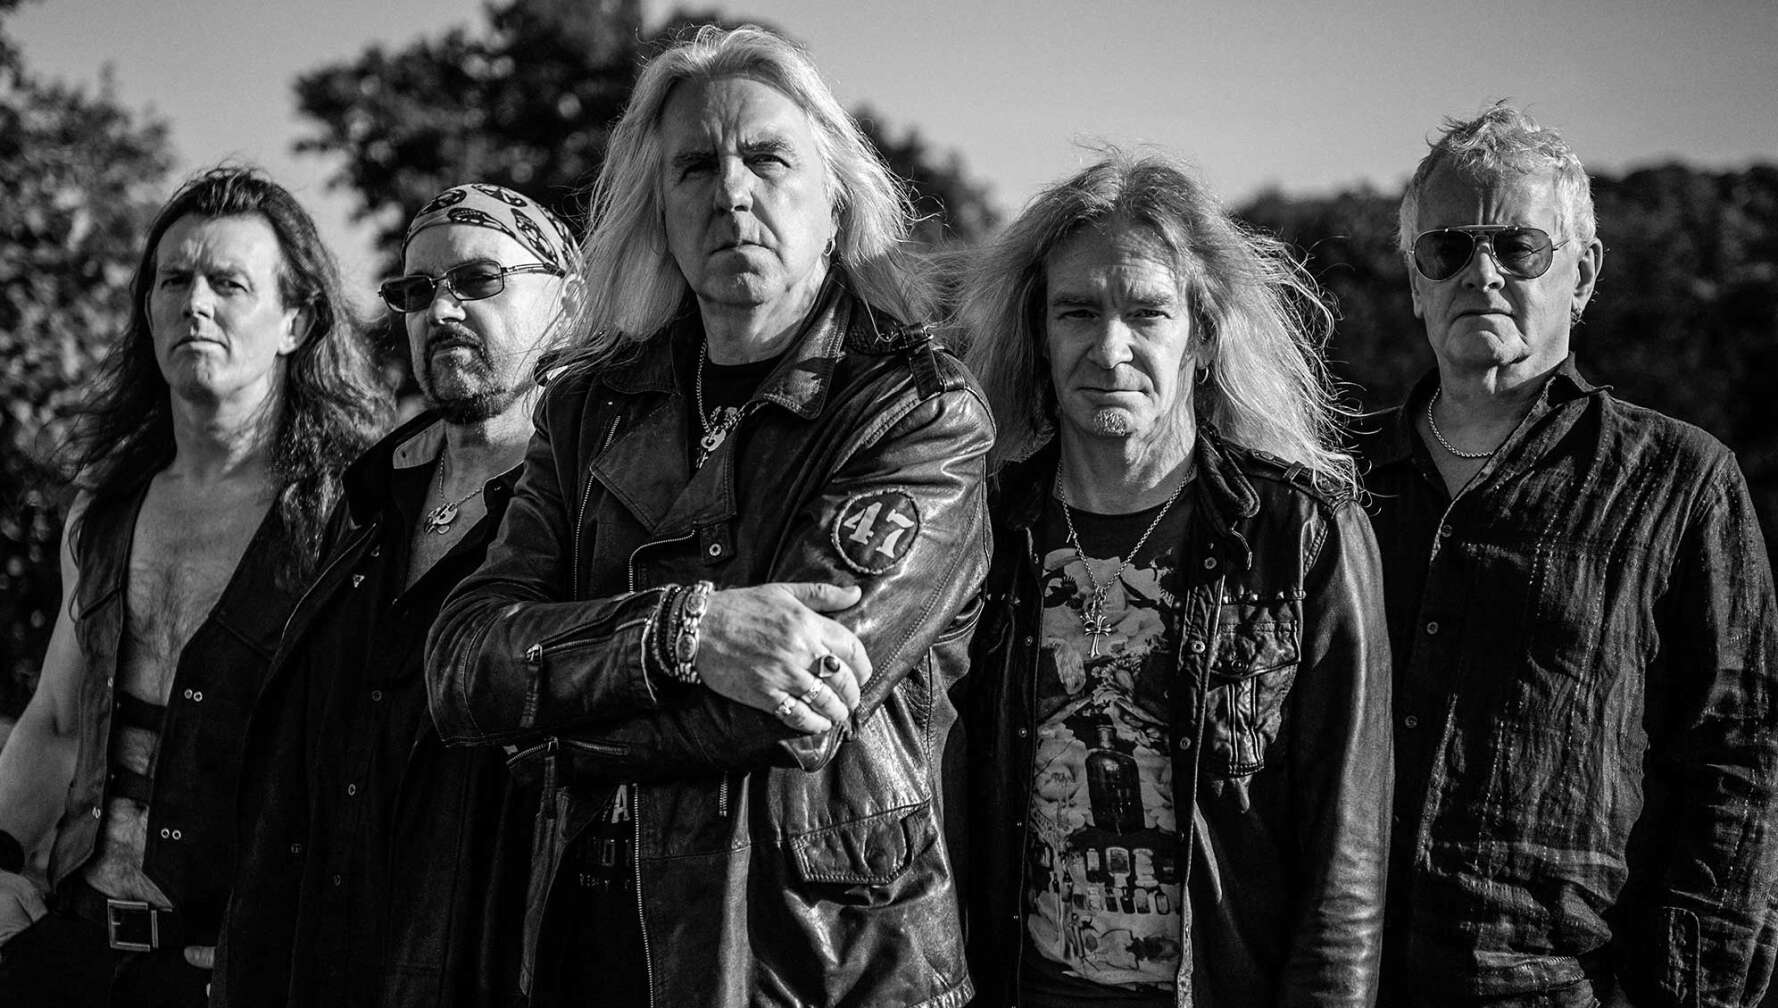 Ein offizielles Bandfoto der britischen Heavy Metal-Band Saxon in schwarz-weiß